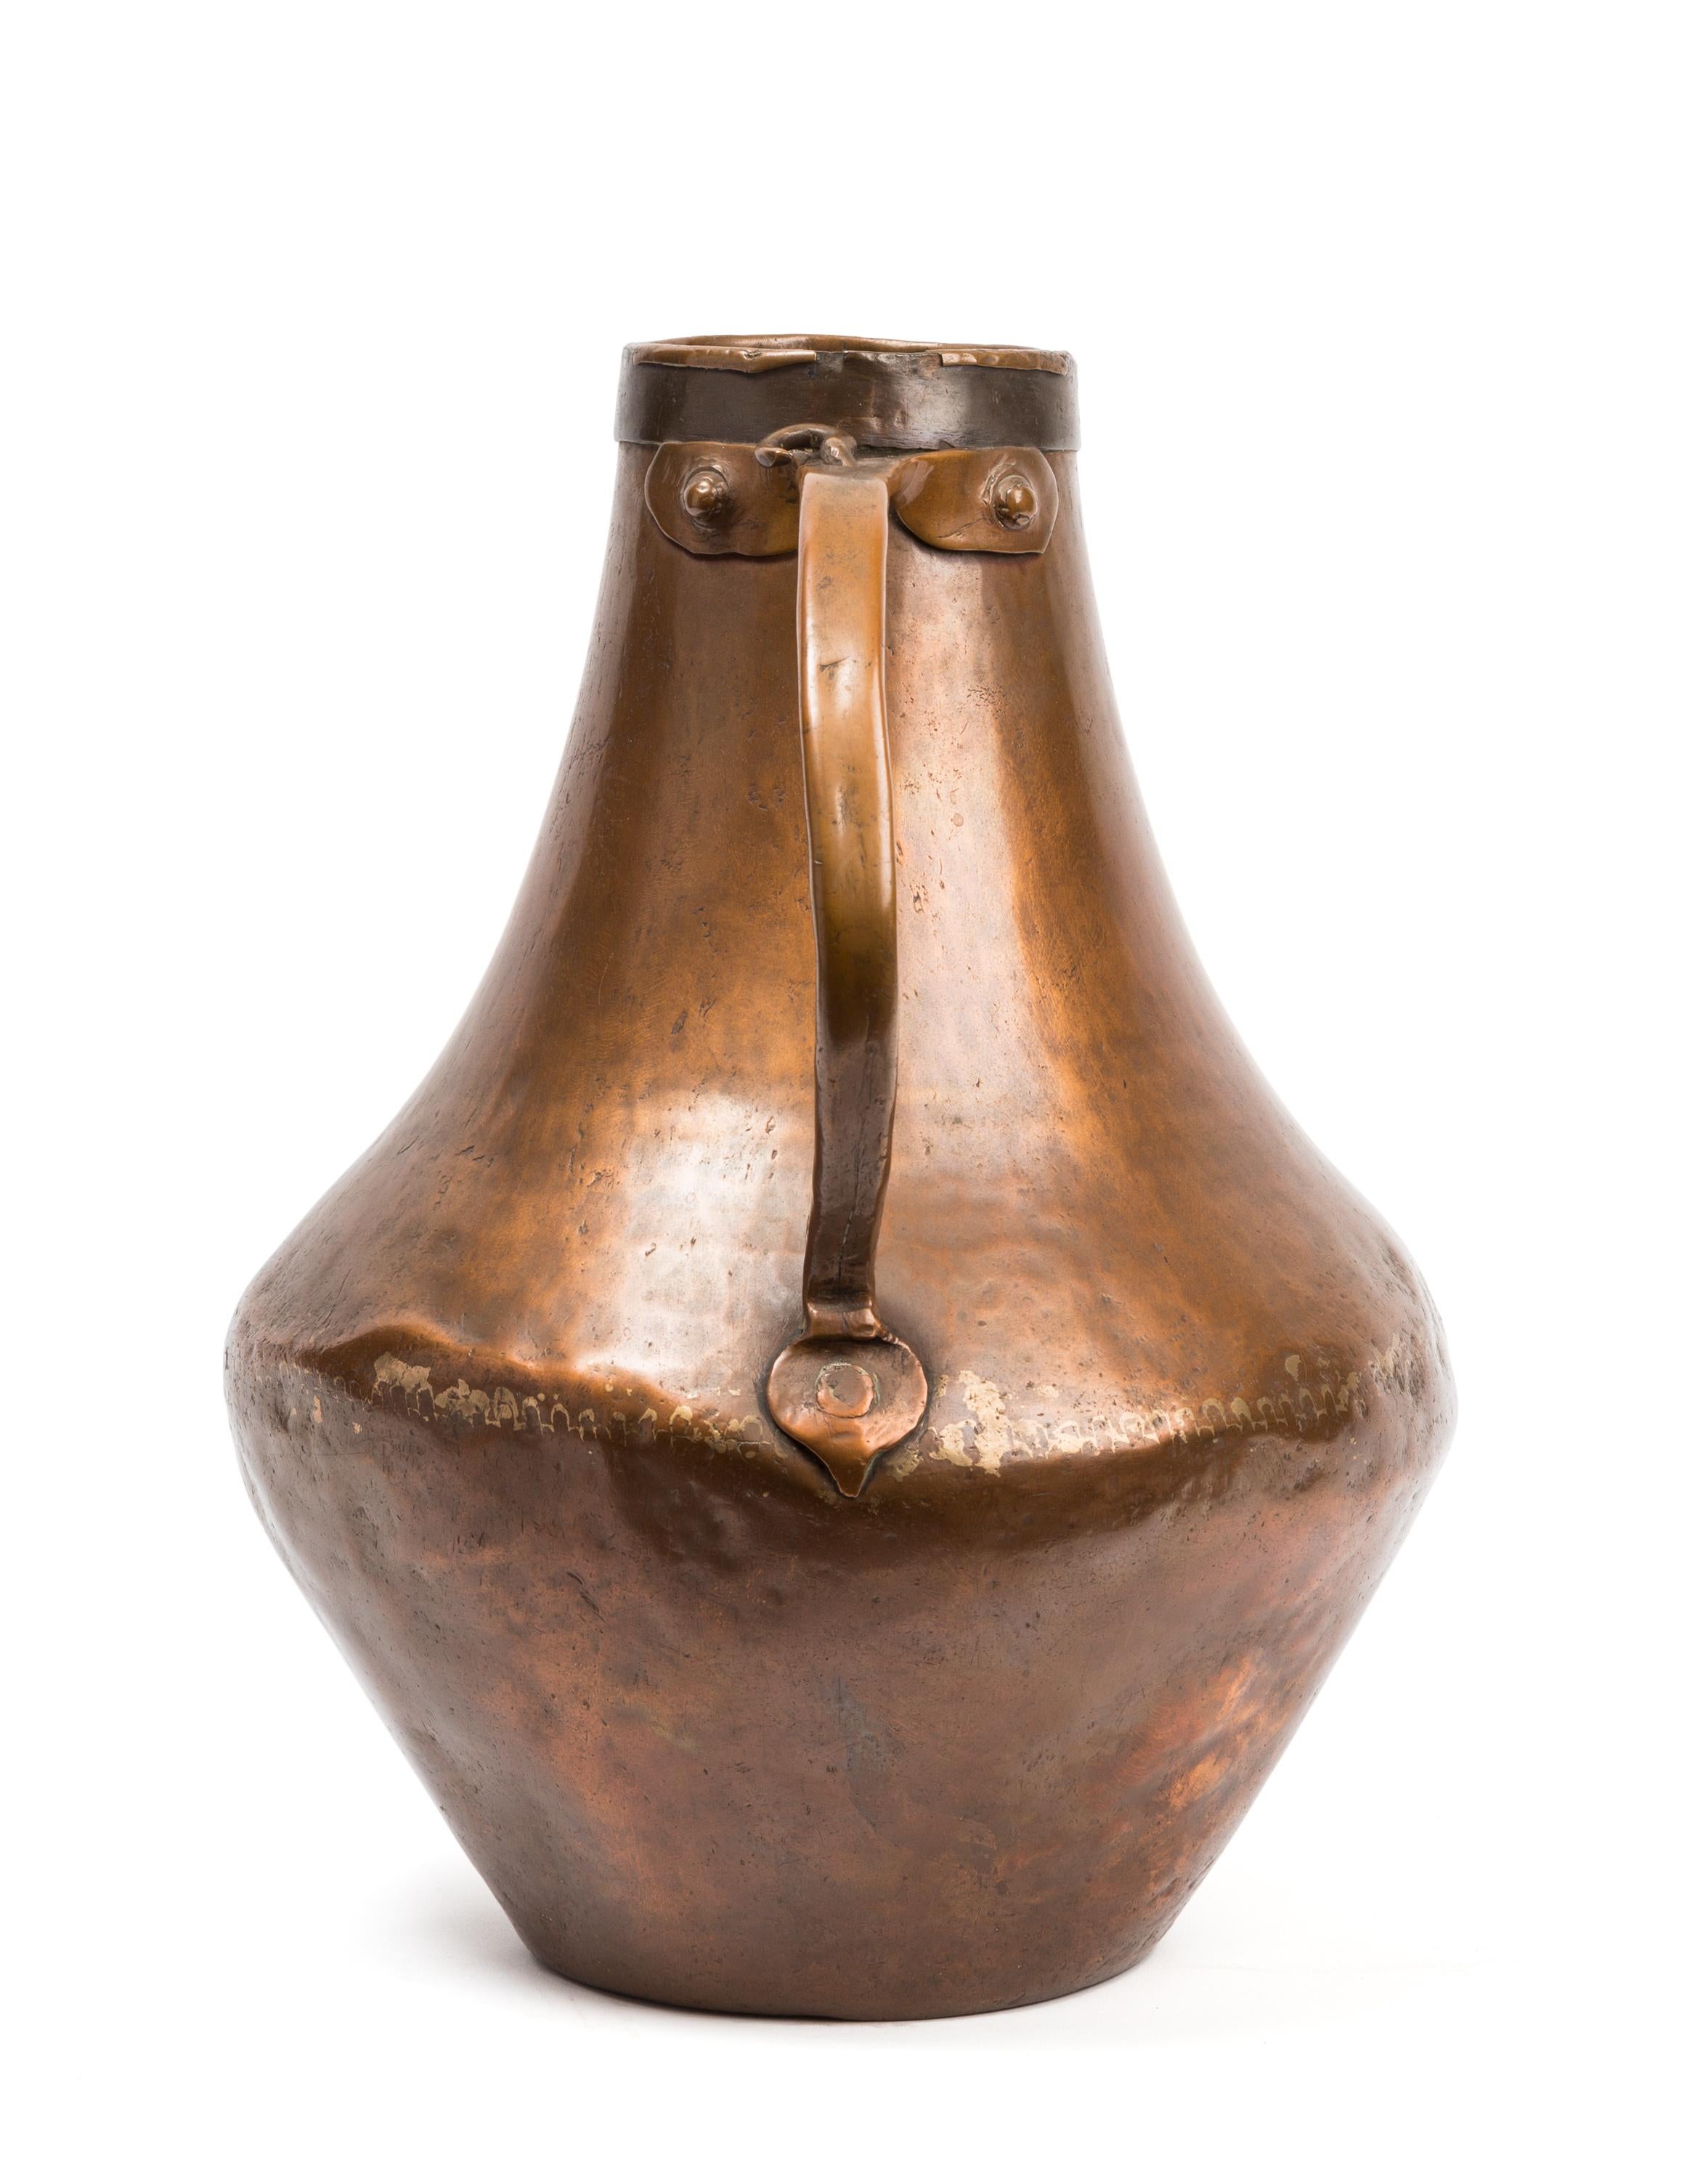 Martelé, riveté et soudé dans l'Espagne du XVIIIe siècle, ce récipient en cuivre était destiné à un usage domestique courant, mais avec sa forme sculpturale, sa couleur riche et la patine de l'âge, il surpasse ses débuts bruts pour devenir un objet